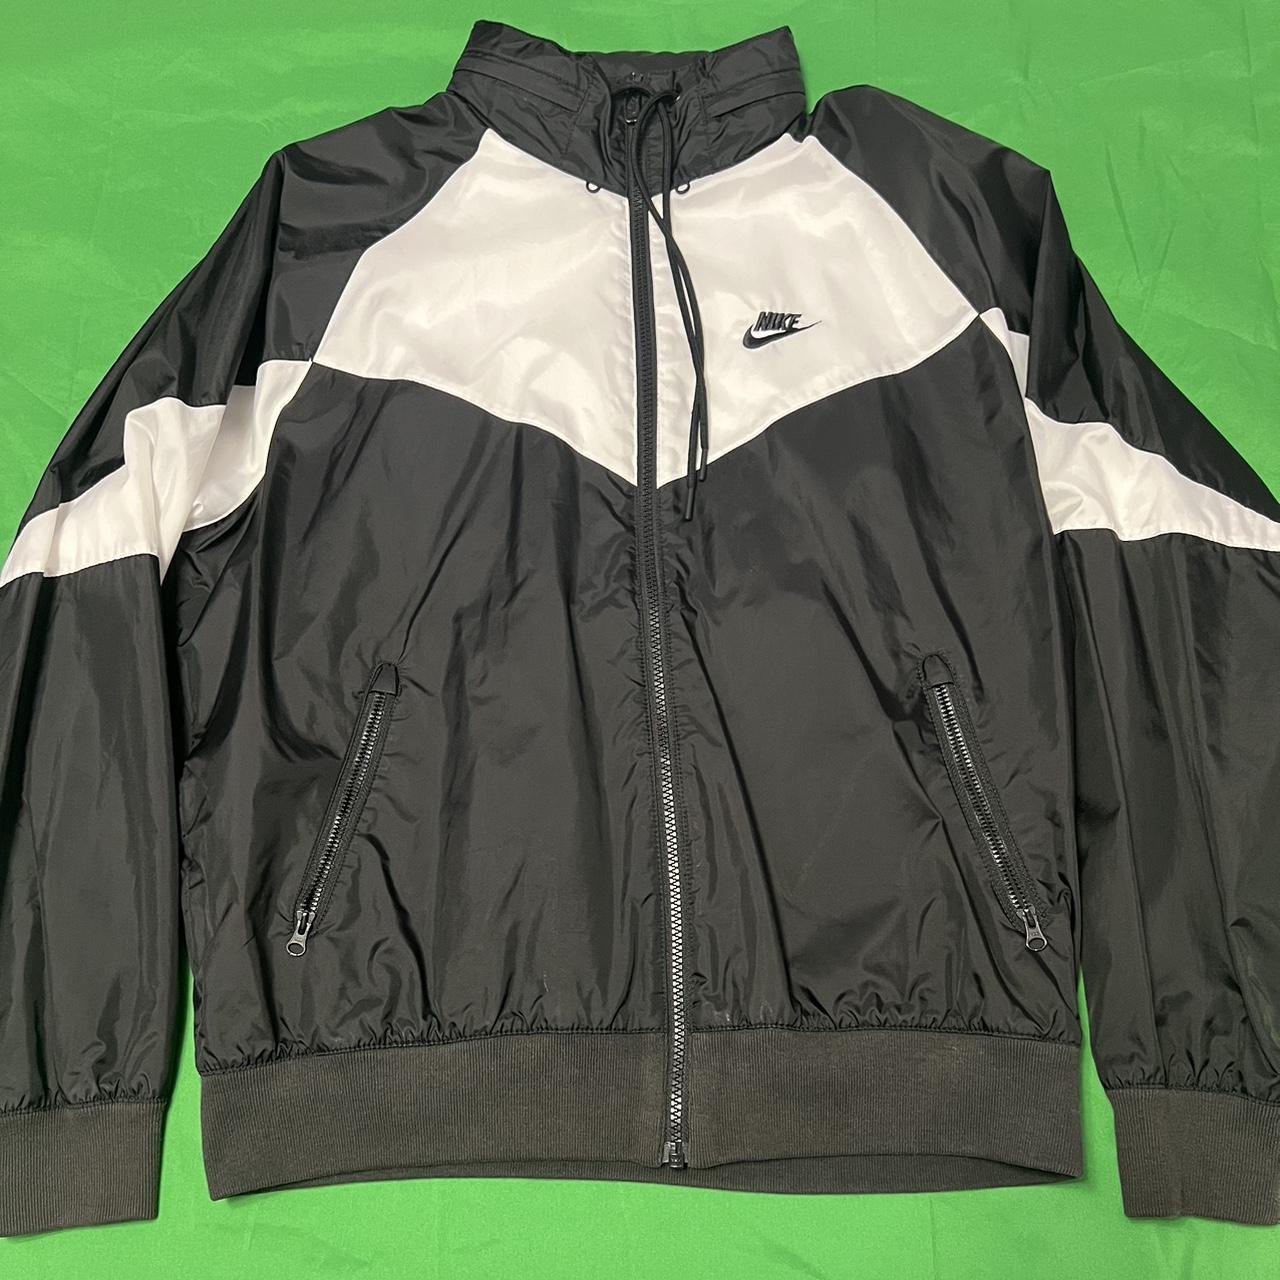 Nike wind breaker jacket Size: Medium Has a hood... - Depop